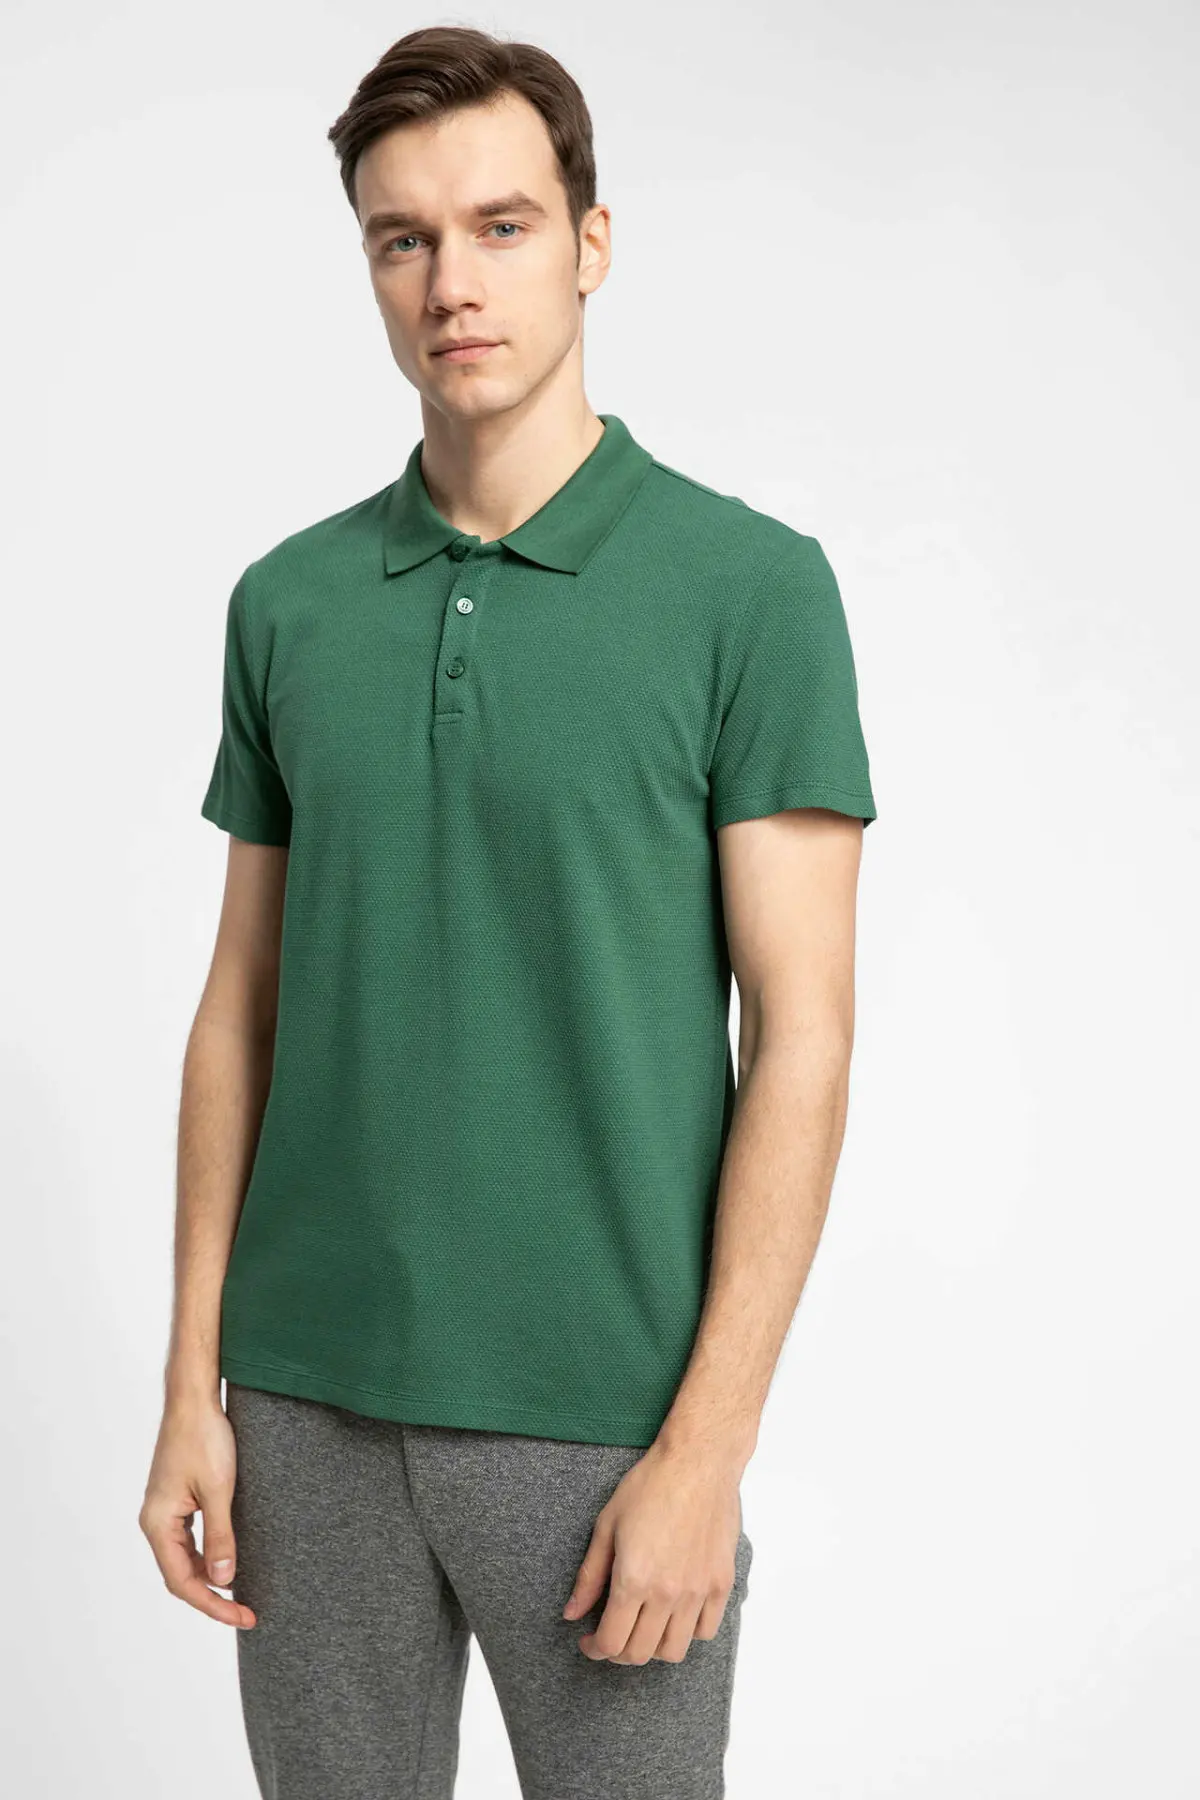 Дефакто мужская Трикотажная Рубашка летняя с коротким рукавом синяя мужская рубашка ткань мужские Смарт повседневные рубашки поло J9905AZ19SPIN131-J9905AZ19SP - Цвет: Зеленый